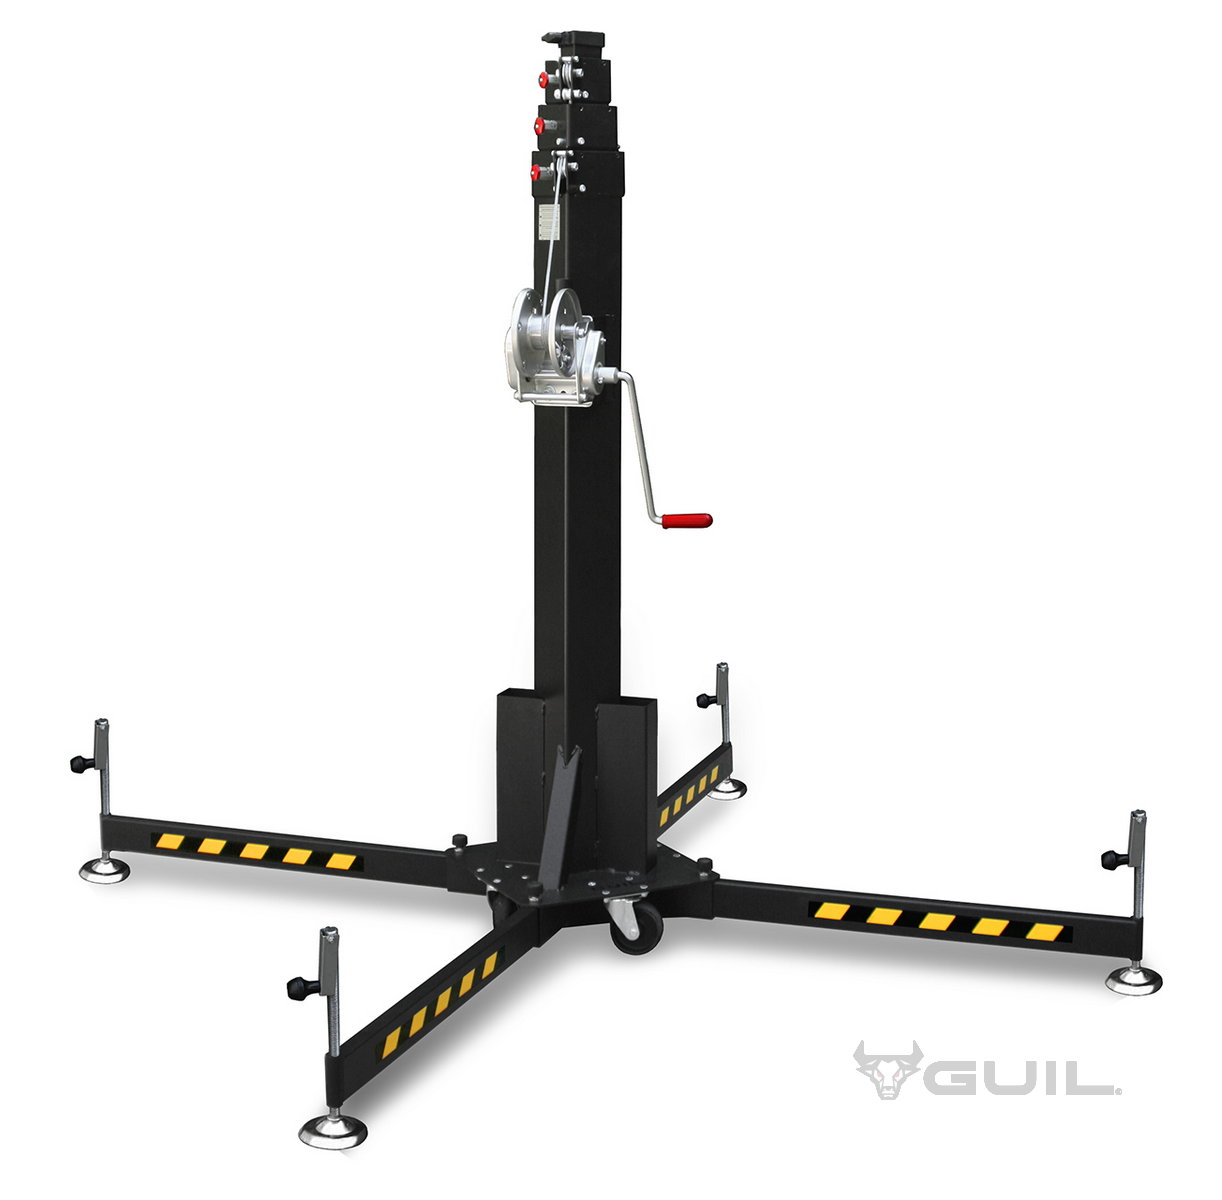 GUIL-materiaallift-5.2m-250kg_ELC770_1.jpg